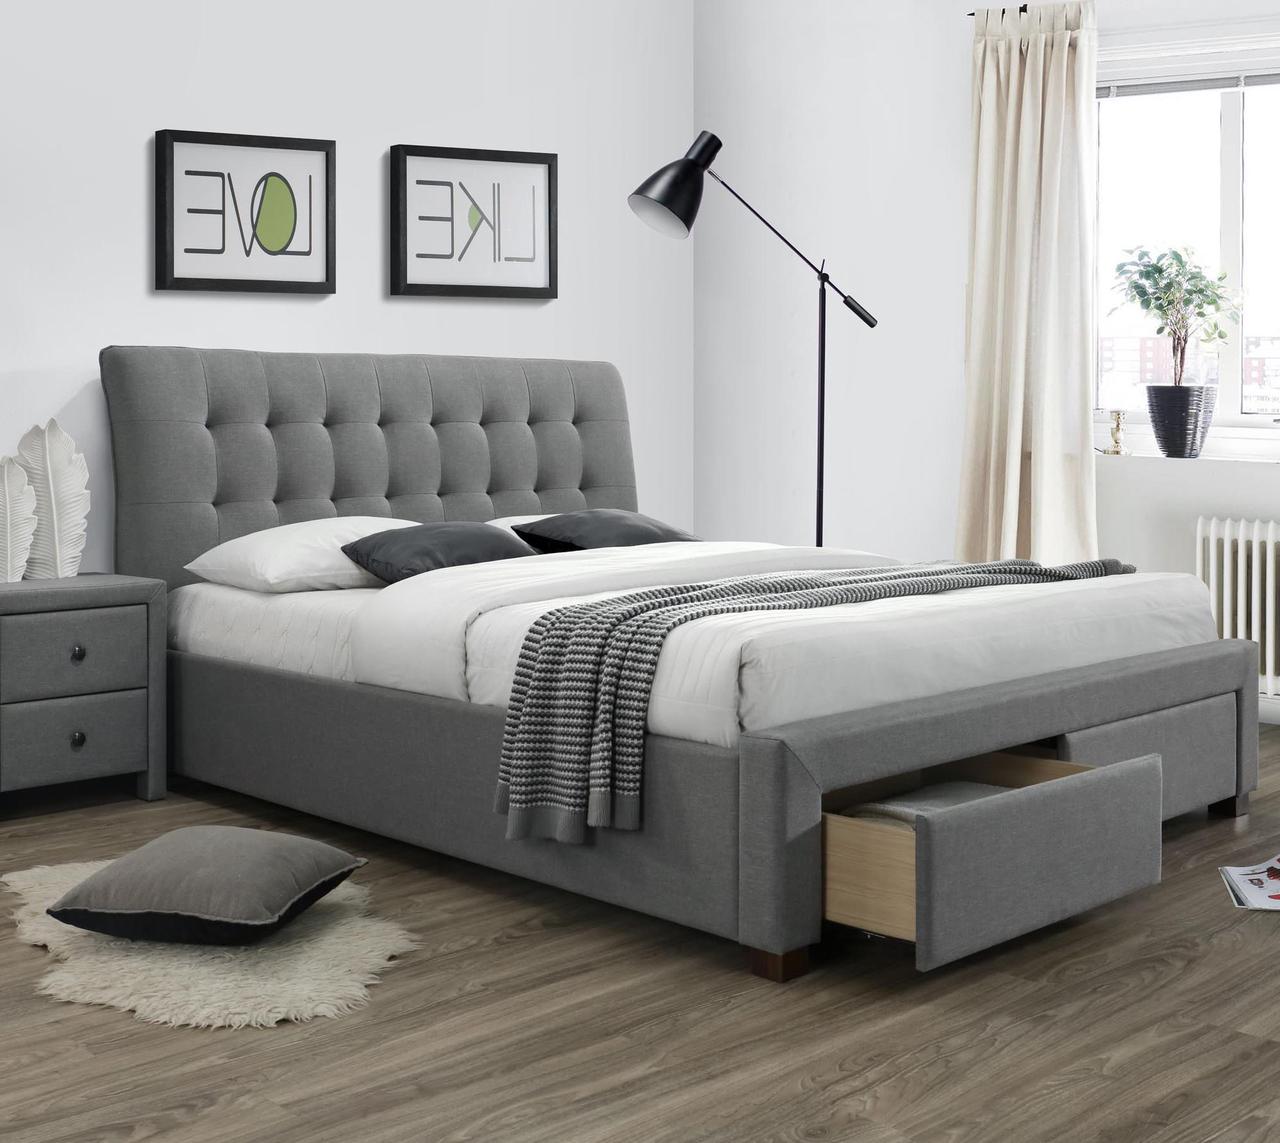 Кровать Halmar PERCY (серый) 160/200